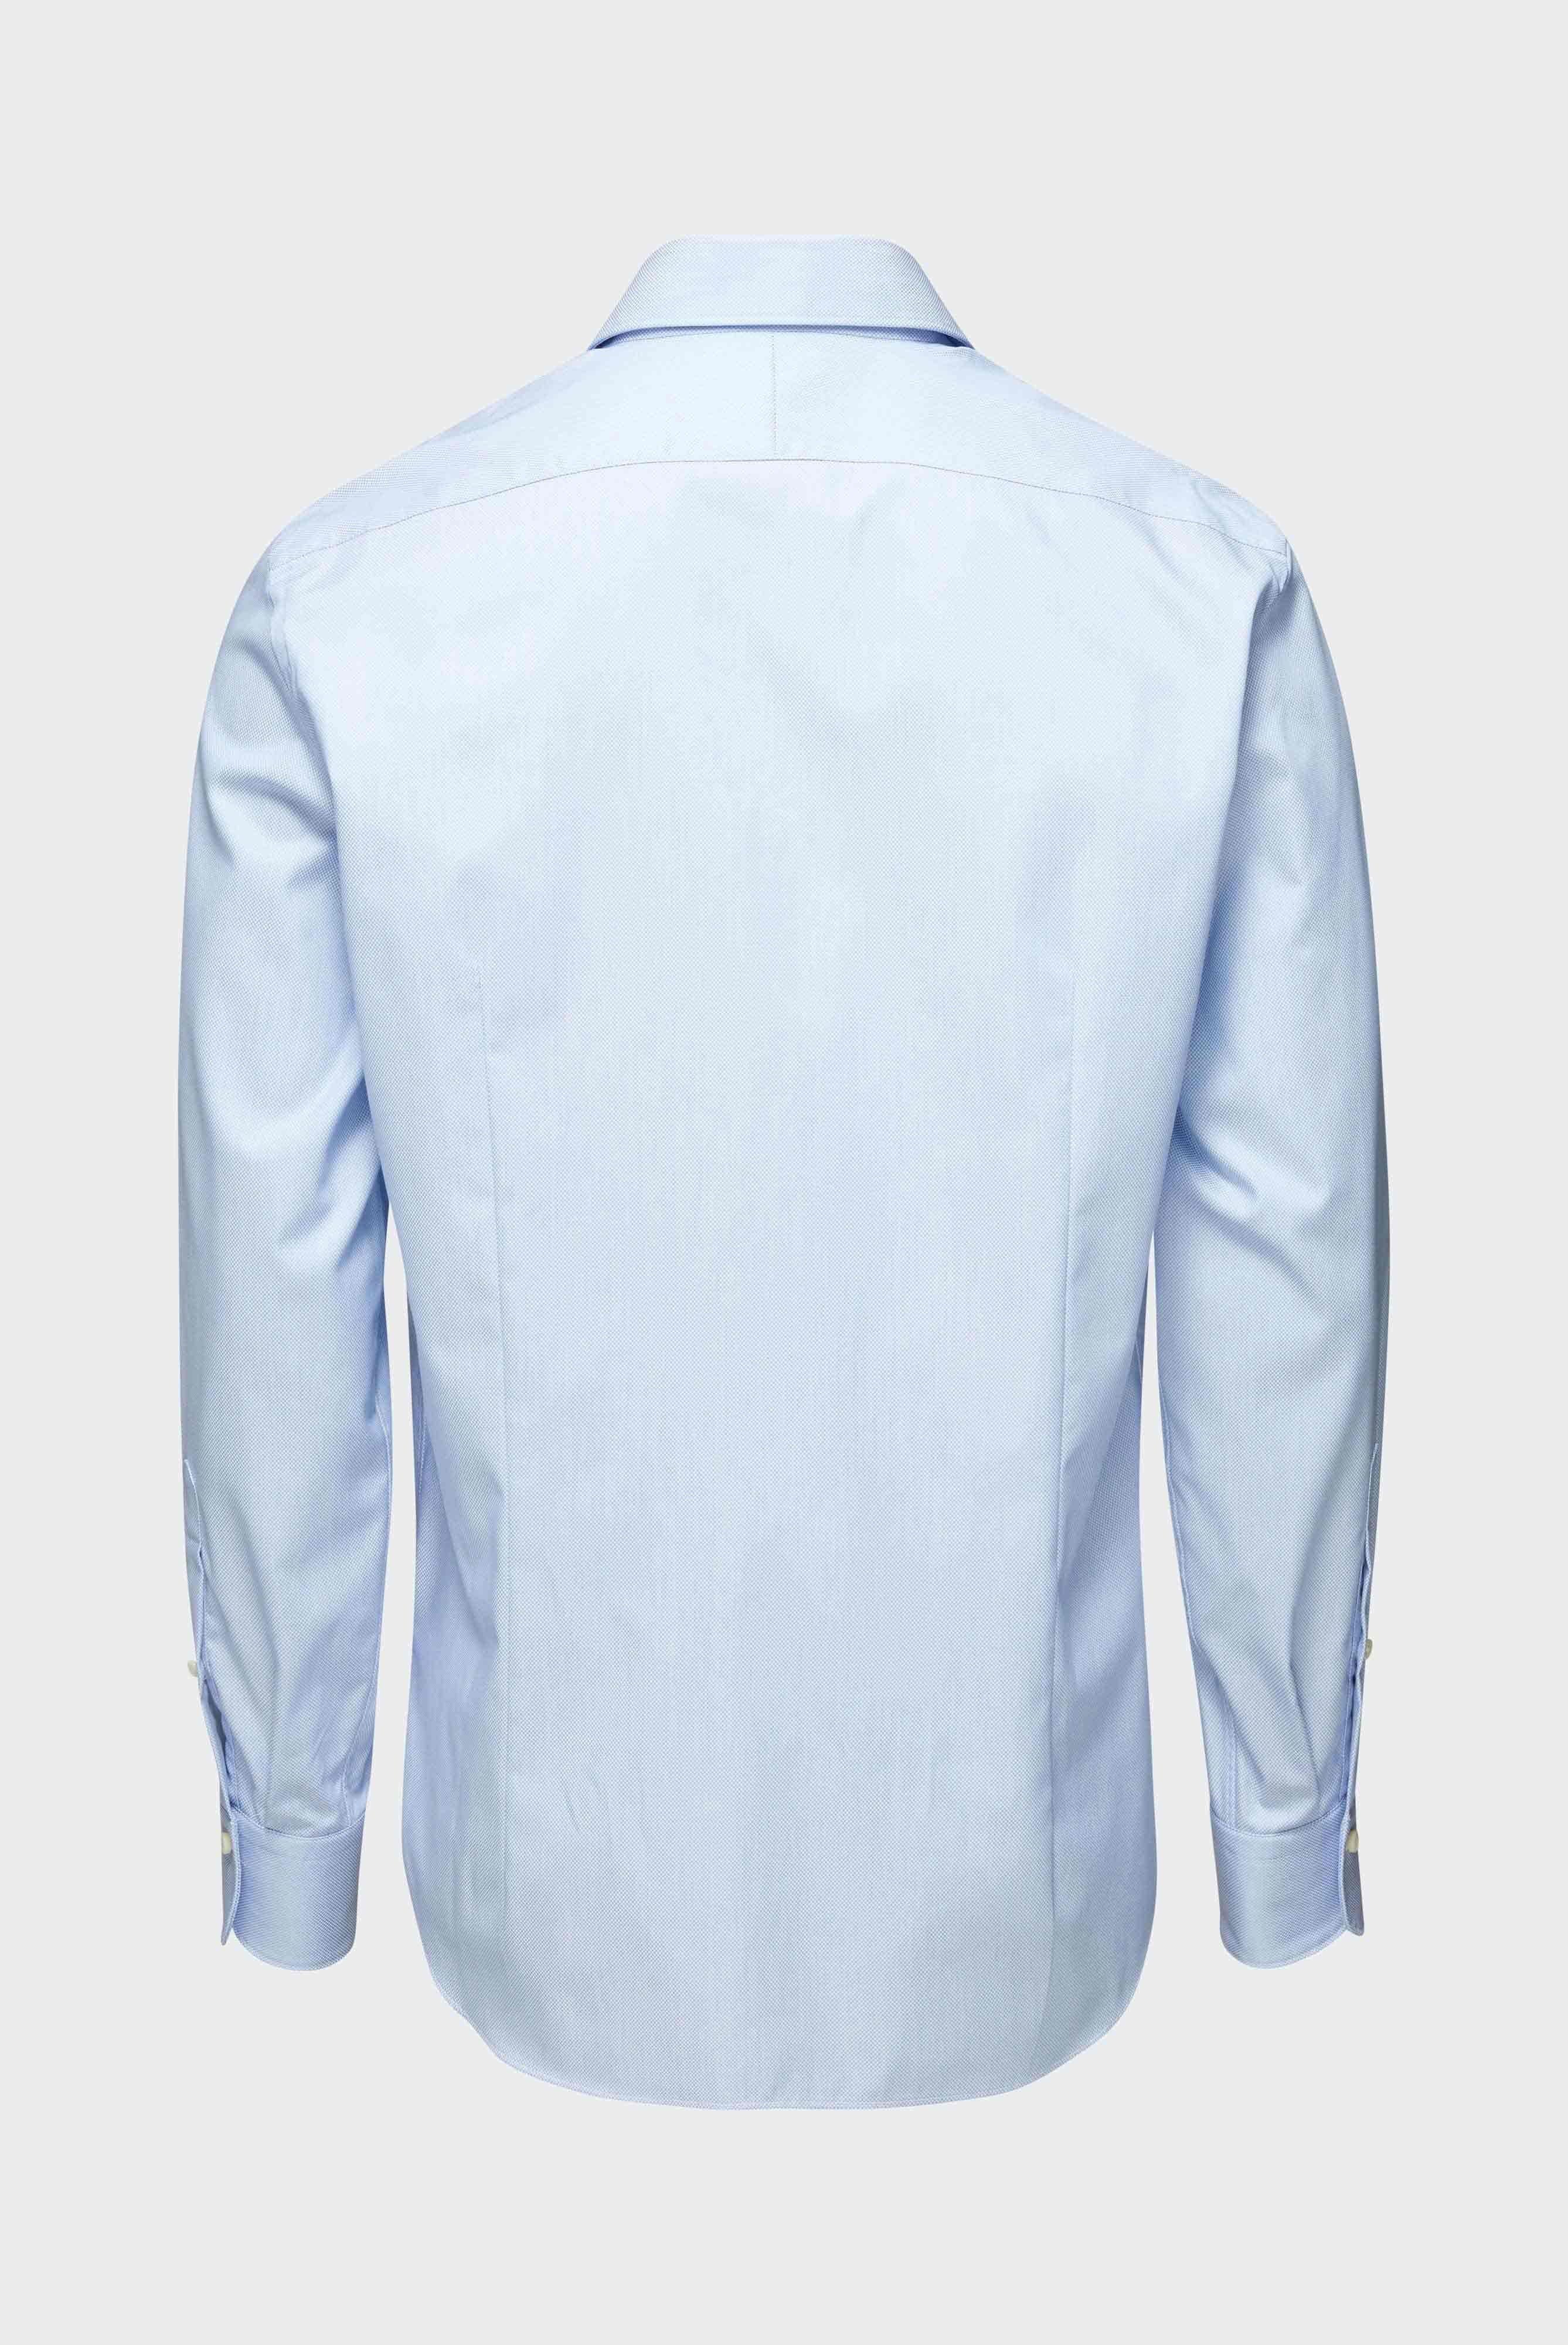 Business Shirts+Textured Sartorial Shirt Tailor Fit+20.2502.NV.151209.730.38